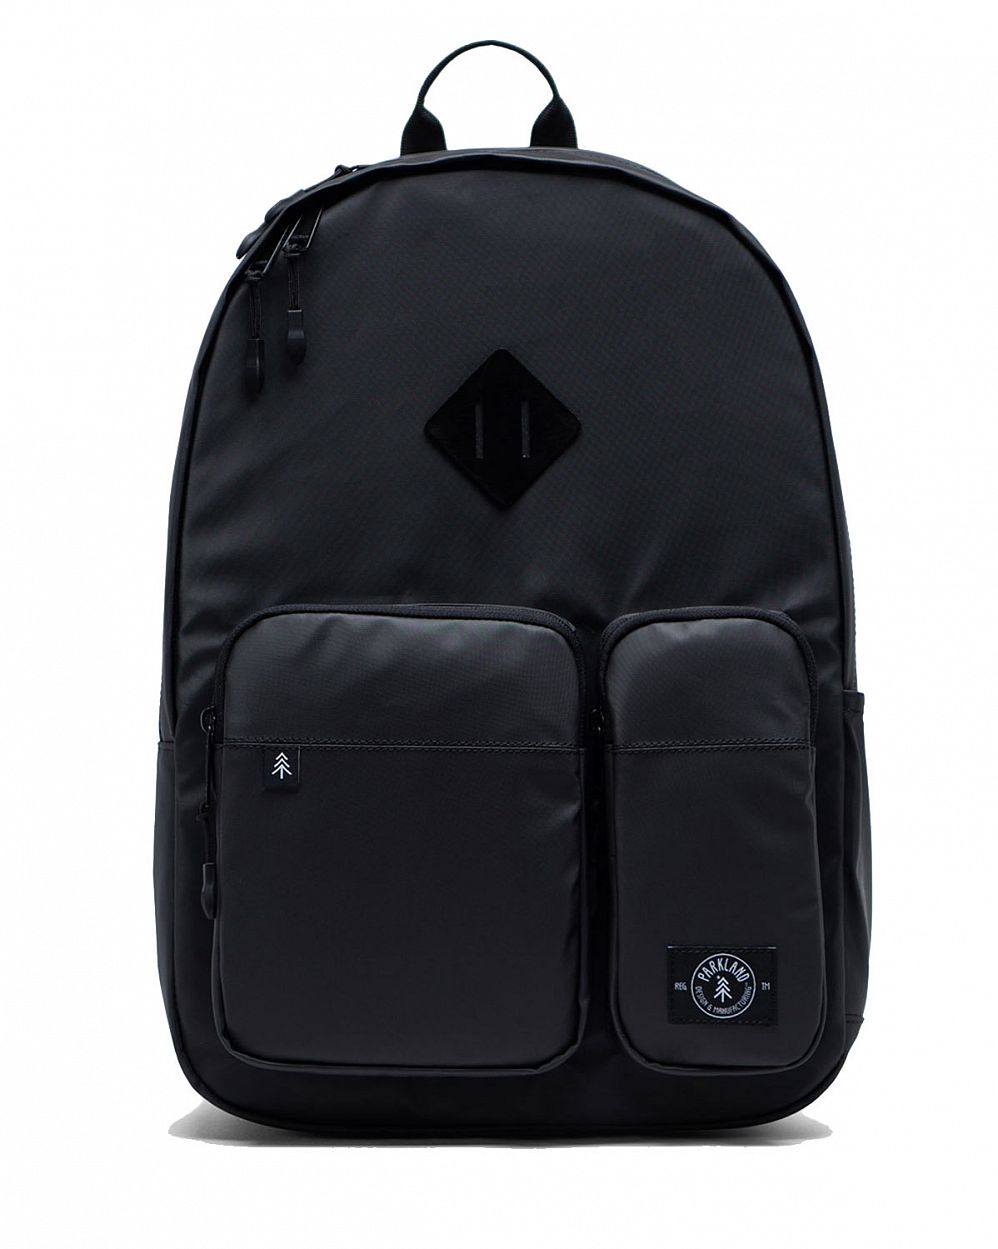 Рюкзак водонепроницаемый для 15 ноутбука Parkland Academy COATED BLACK отзывы